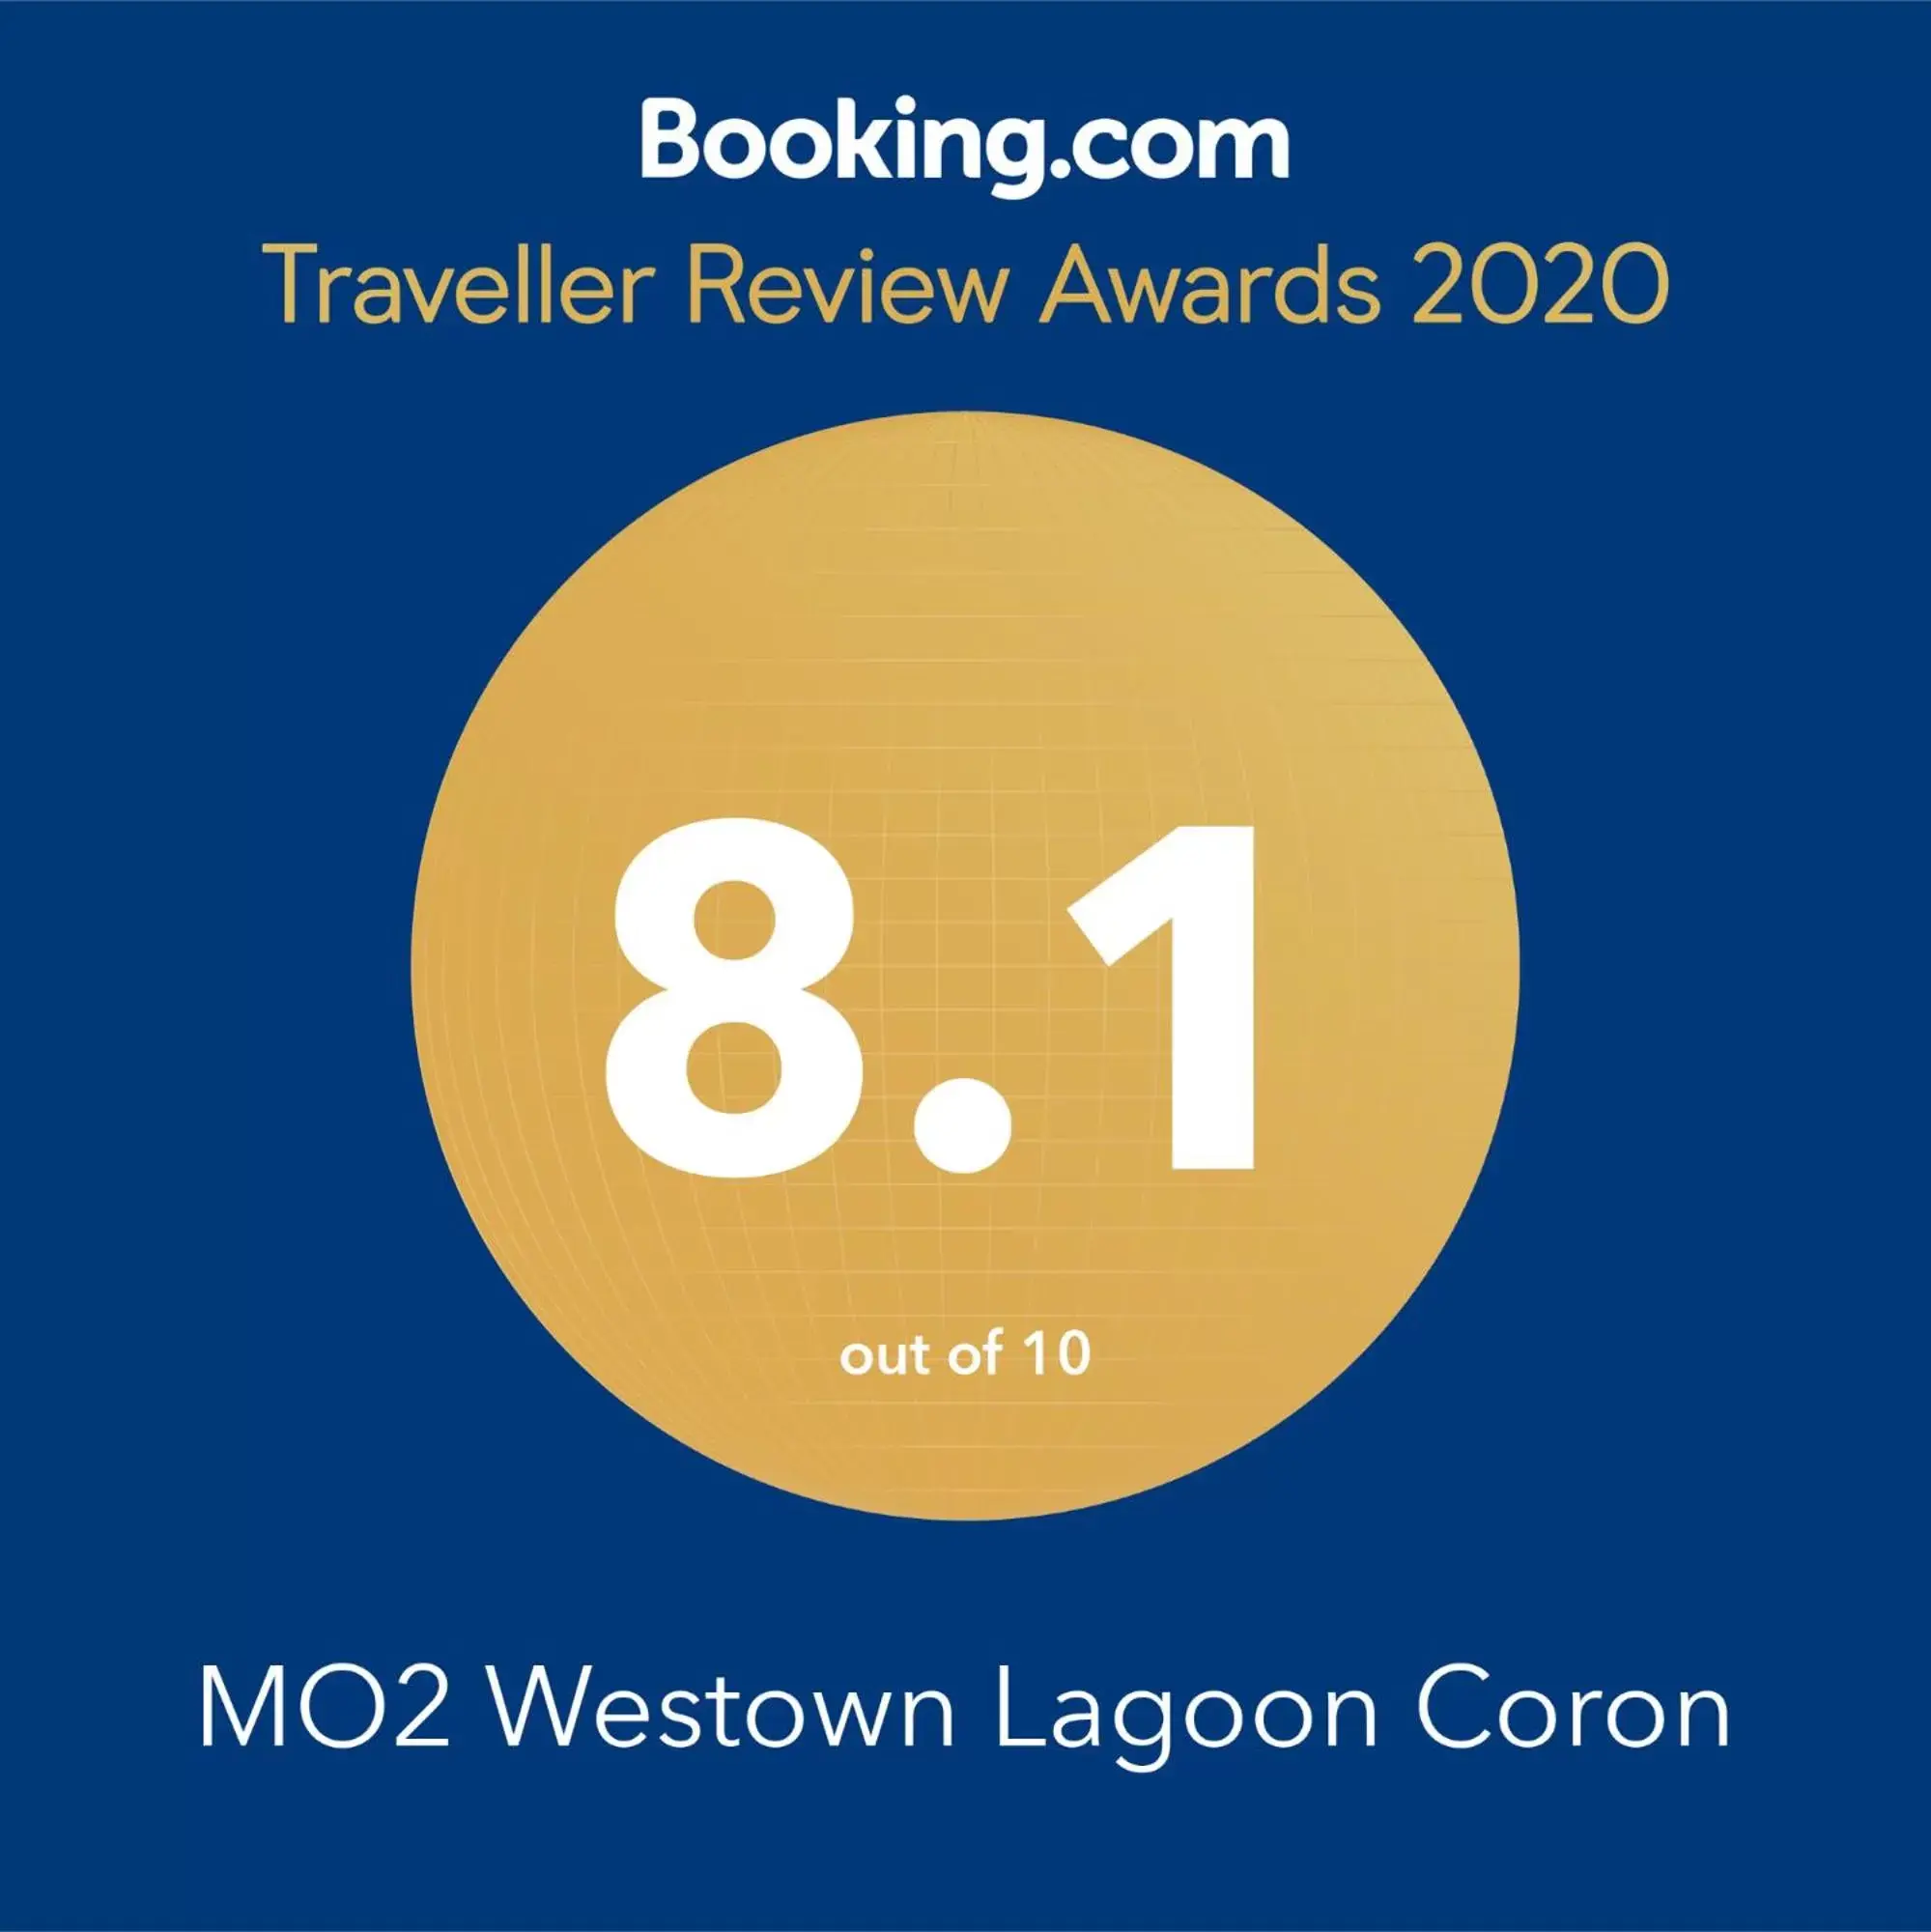 Certificate/Award in MO2 Westown Lagoon Coron